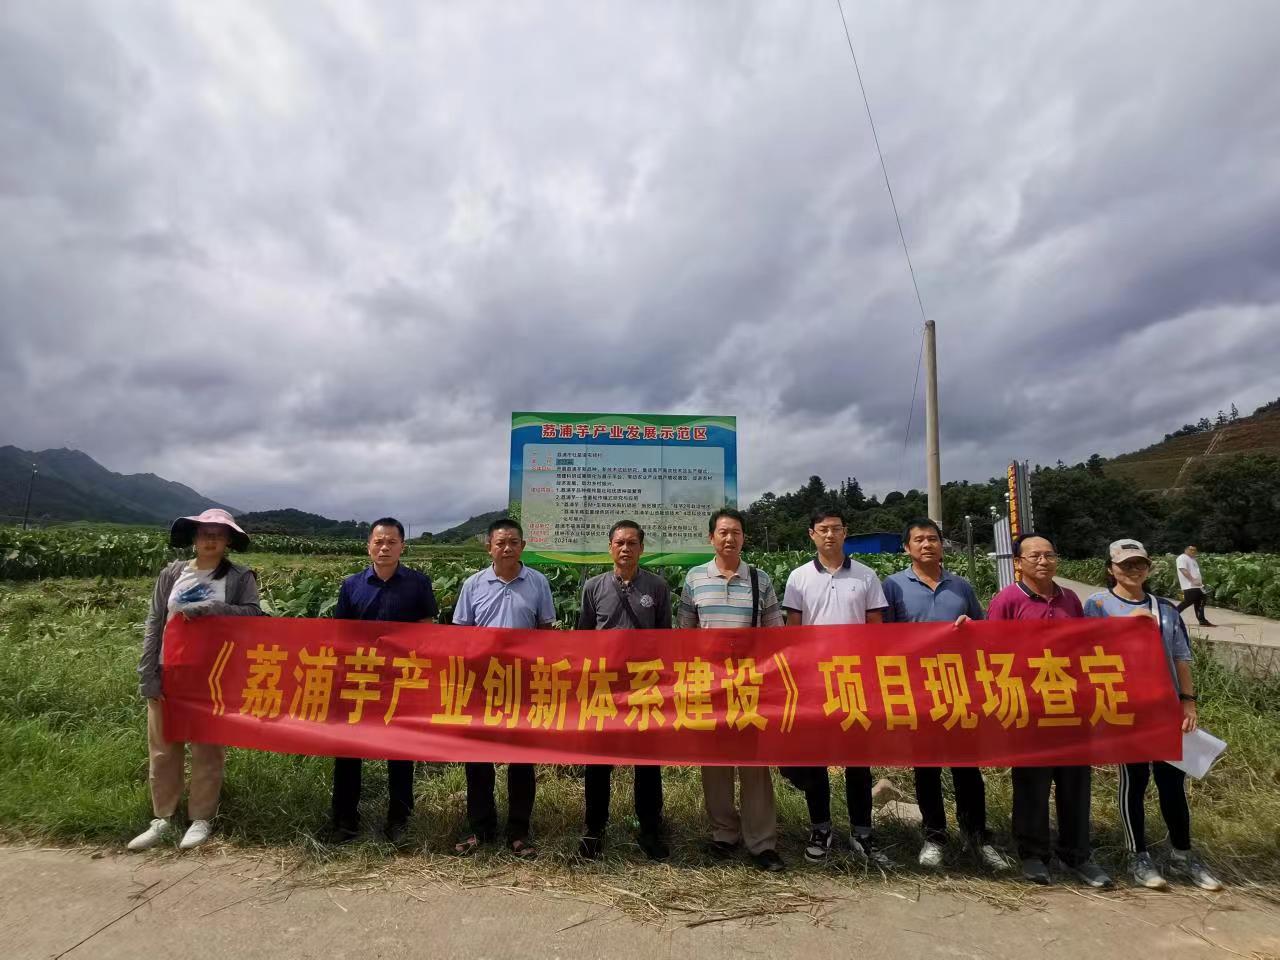 桂林市农业科学研究中心承担的项目“荔浦芋产业创新体系建设”通过专家现场查定